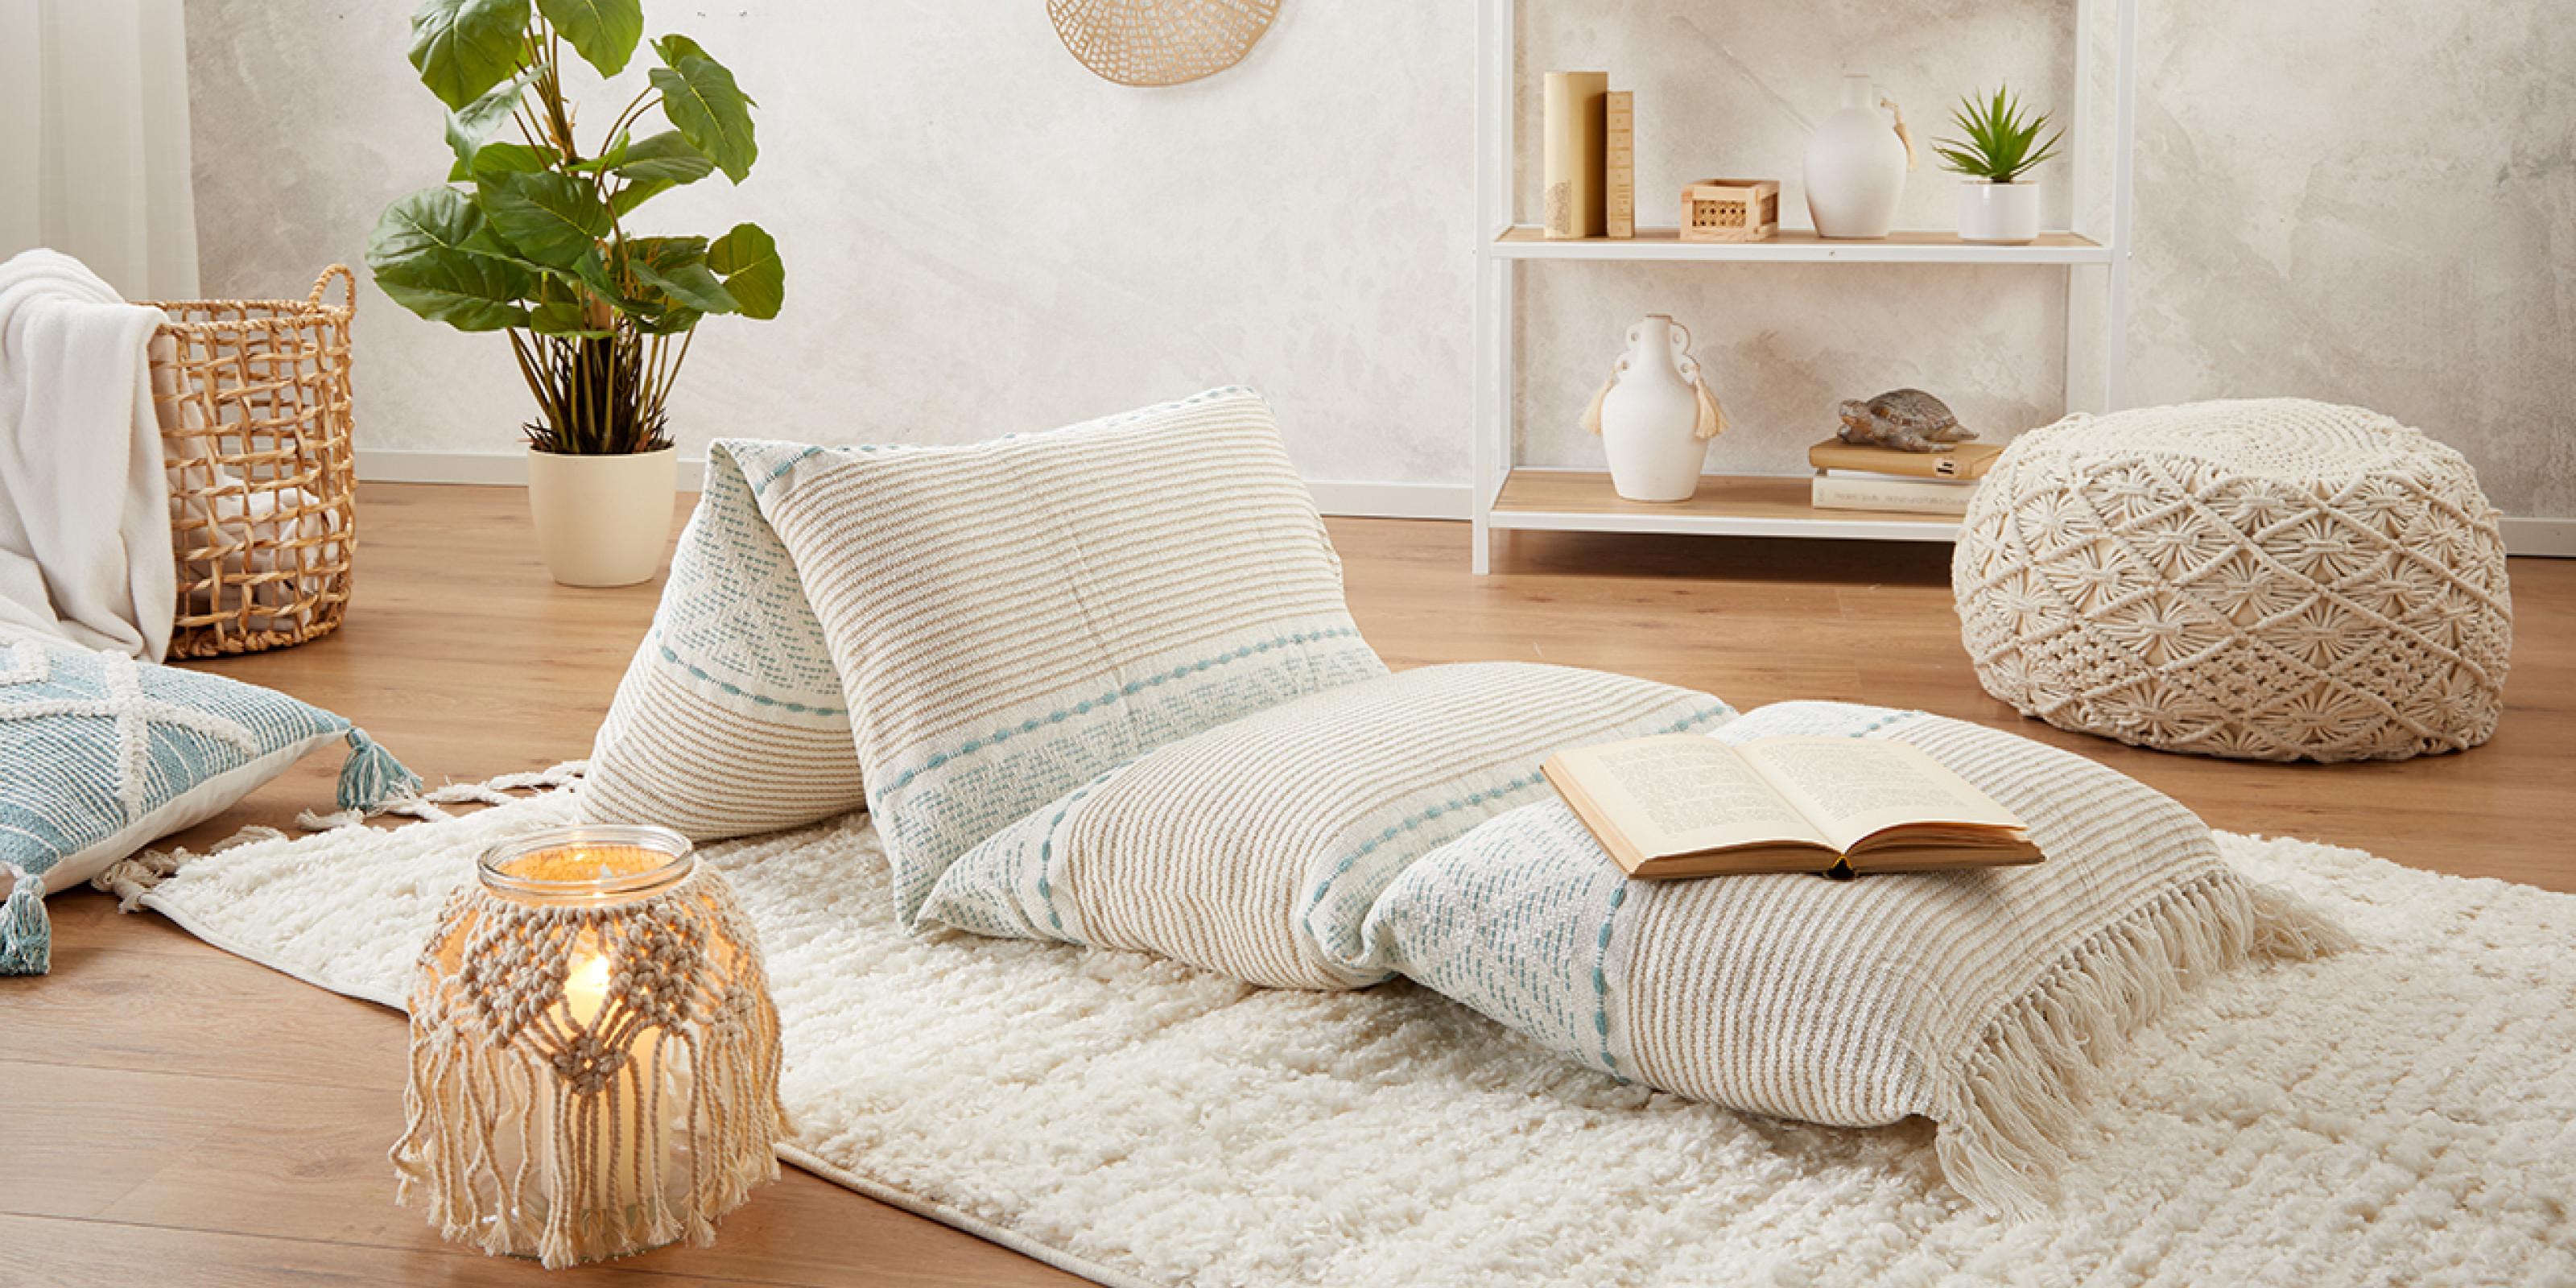 šikovný a pohodlný matrac z vánkúšov, ktorý si vyrobíte aj sami